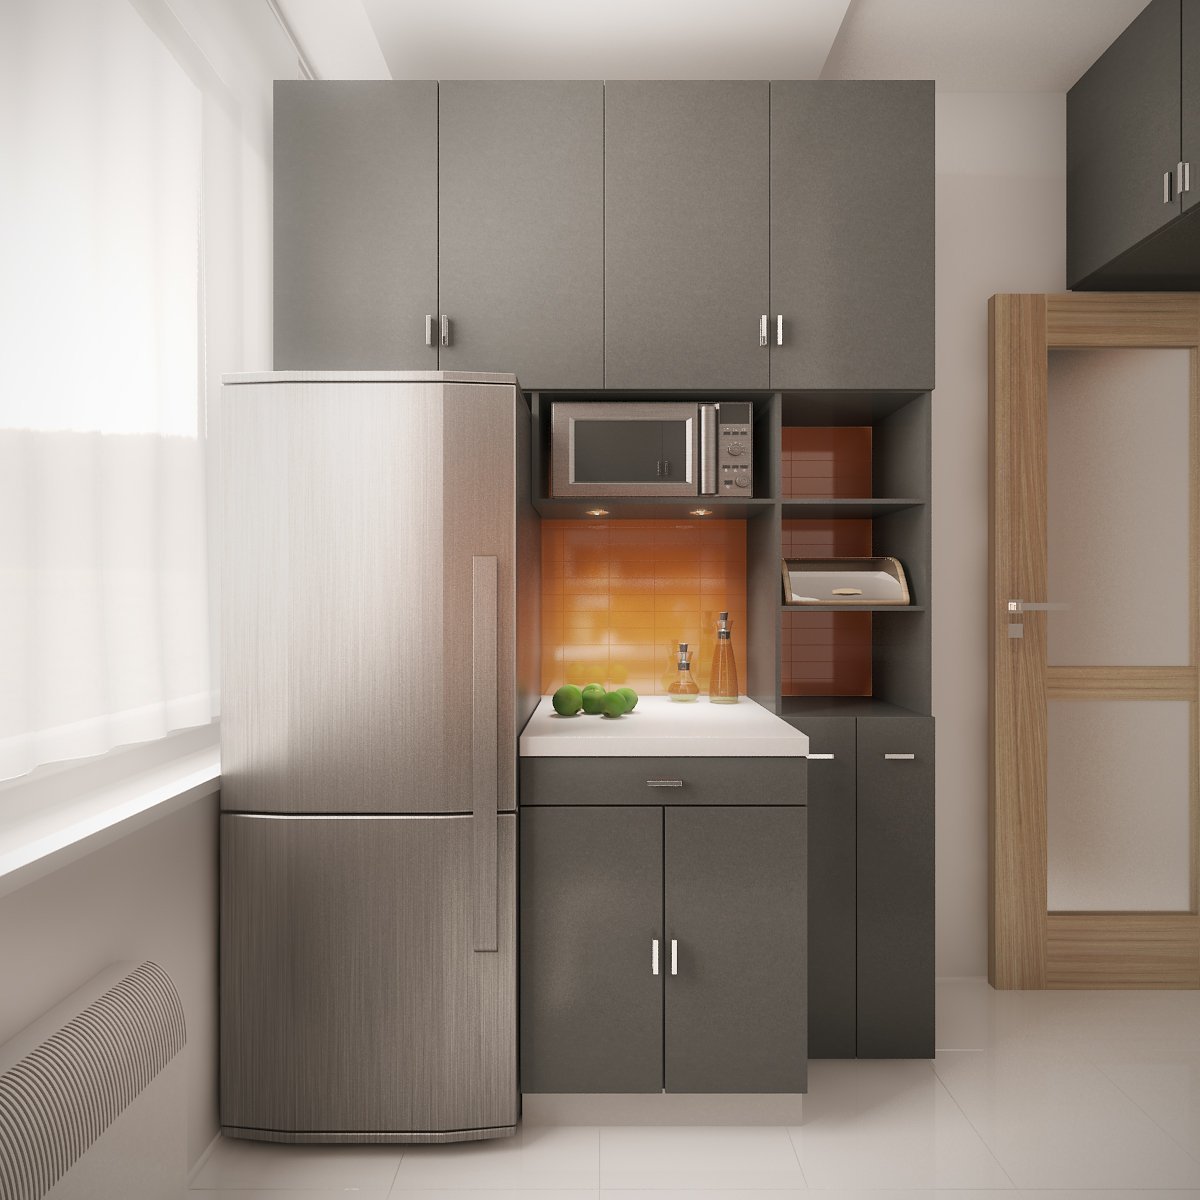 Дизайн маленькой кухни с холодильником